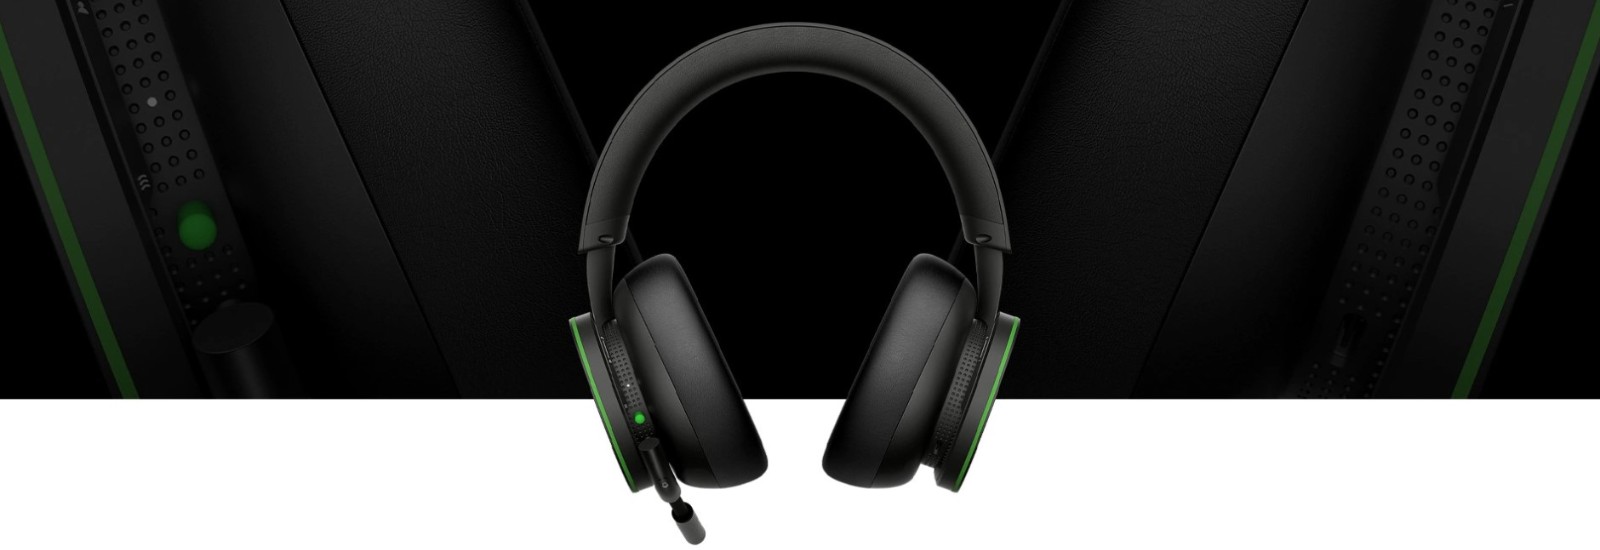 Xbox无线耳机3月16日支卖 卖价99.99好元